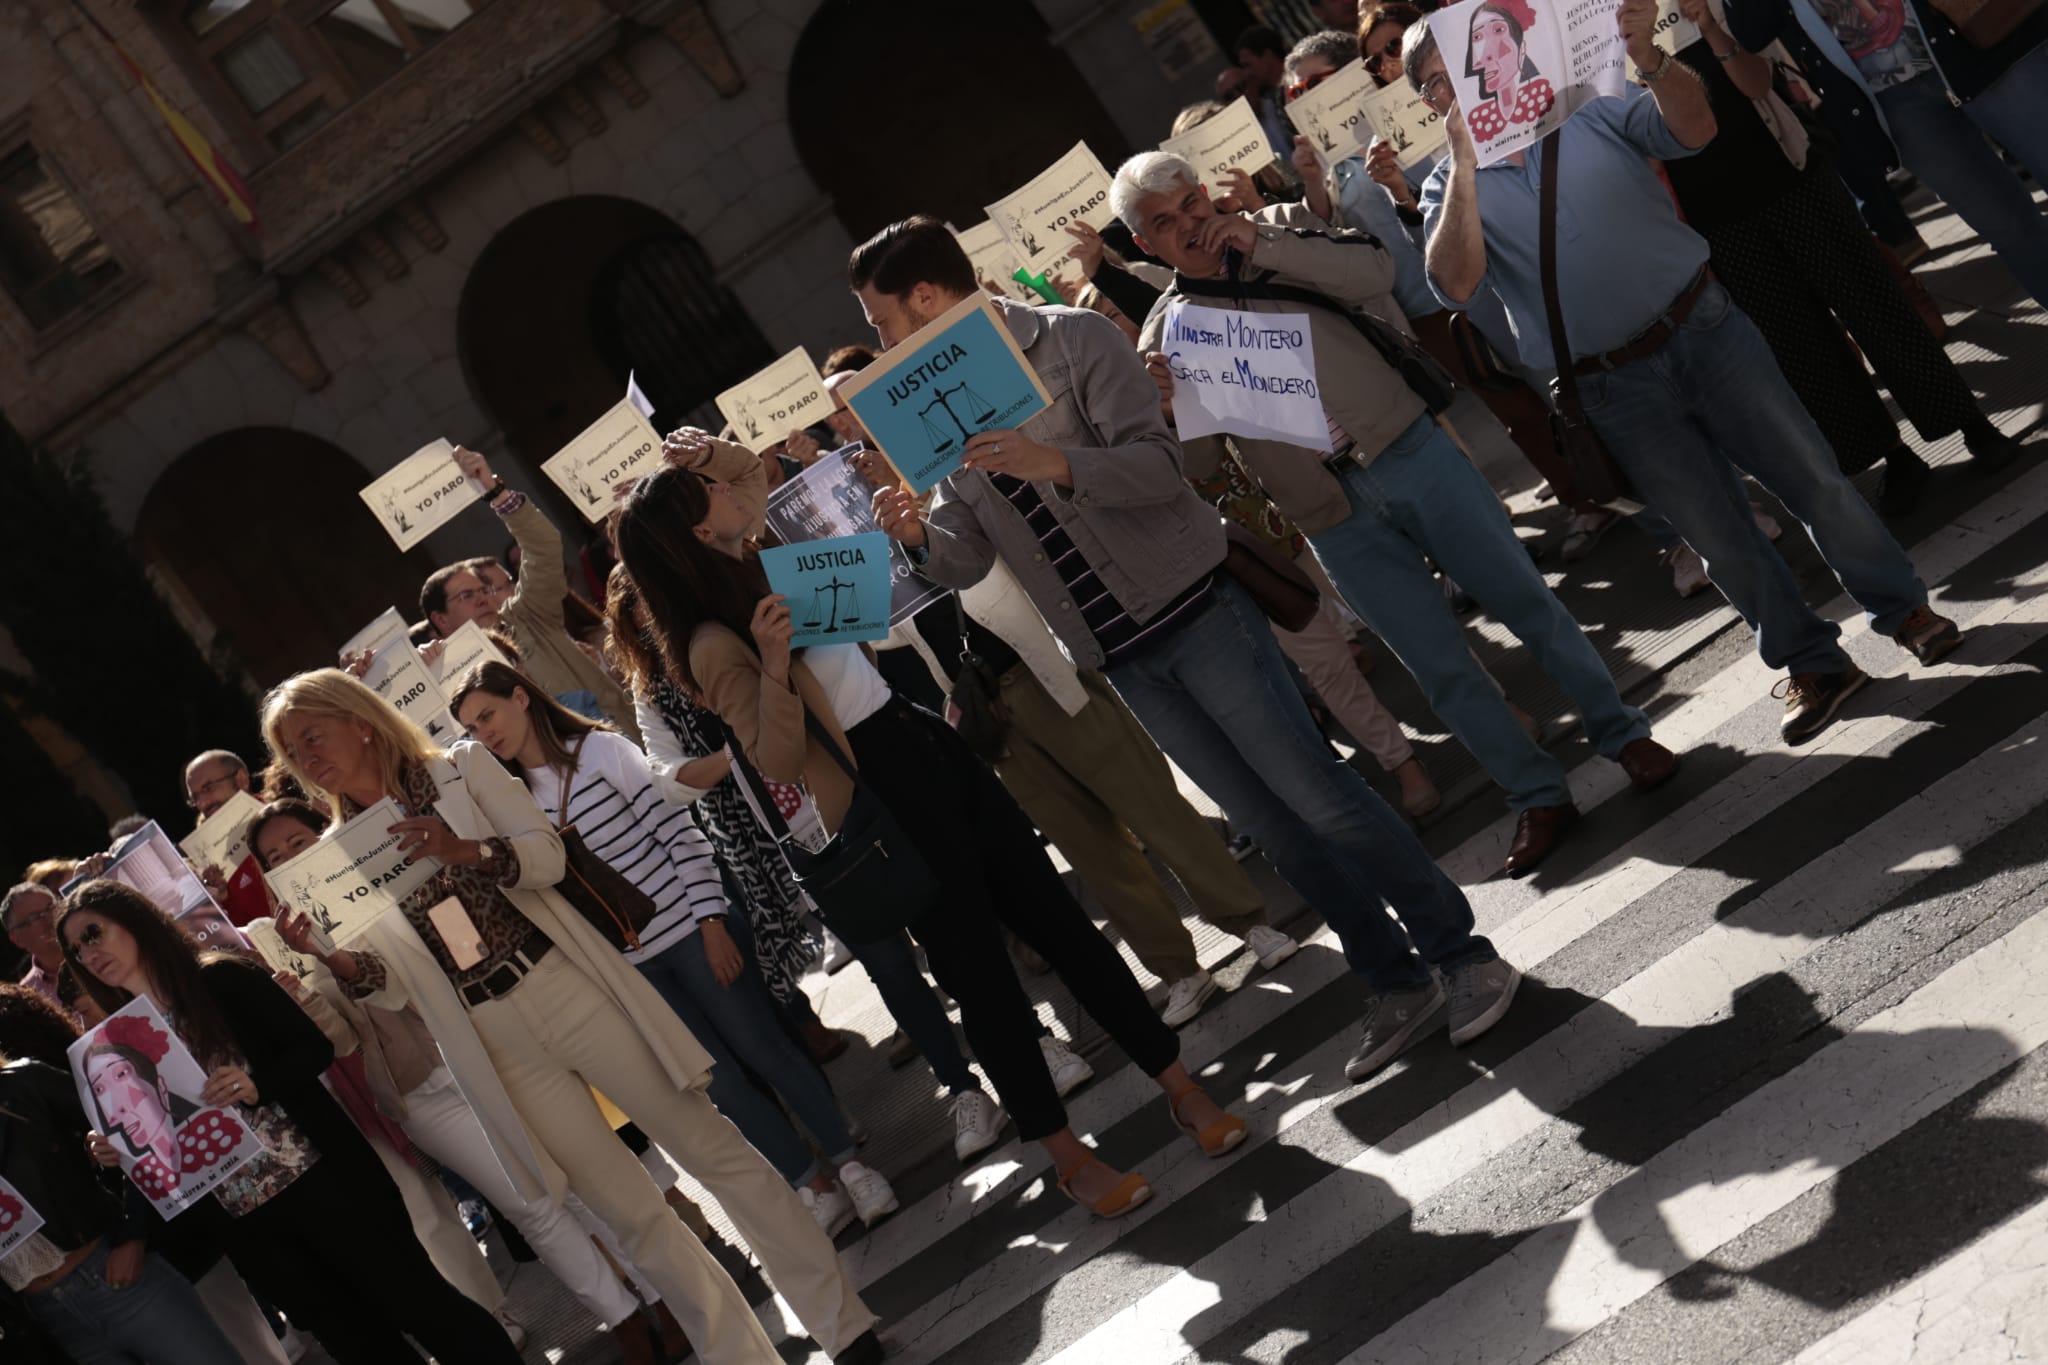 Los trabajadores de Justicia protestan en las calles en Salamanca